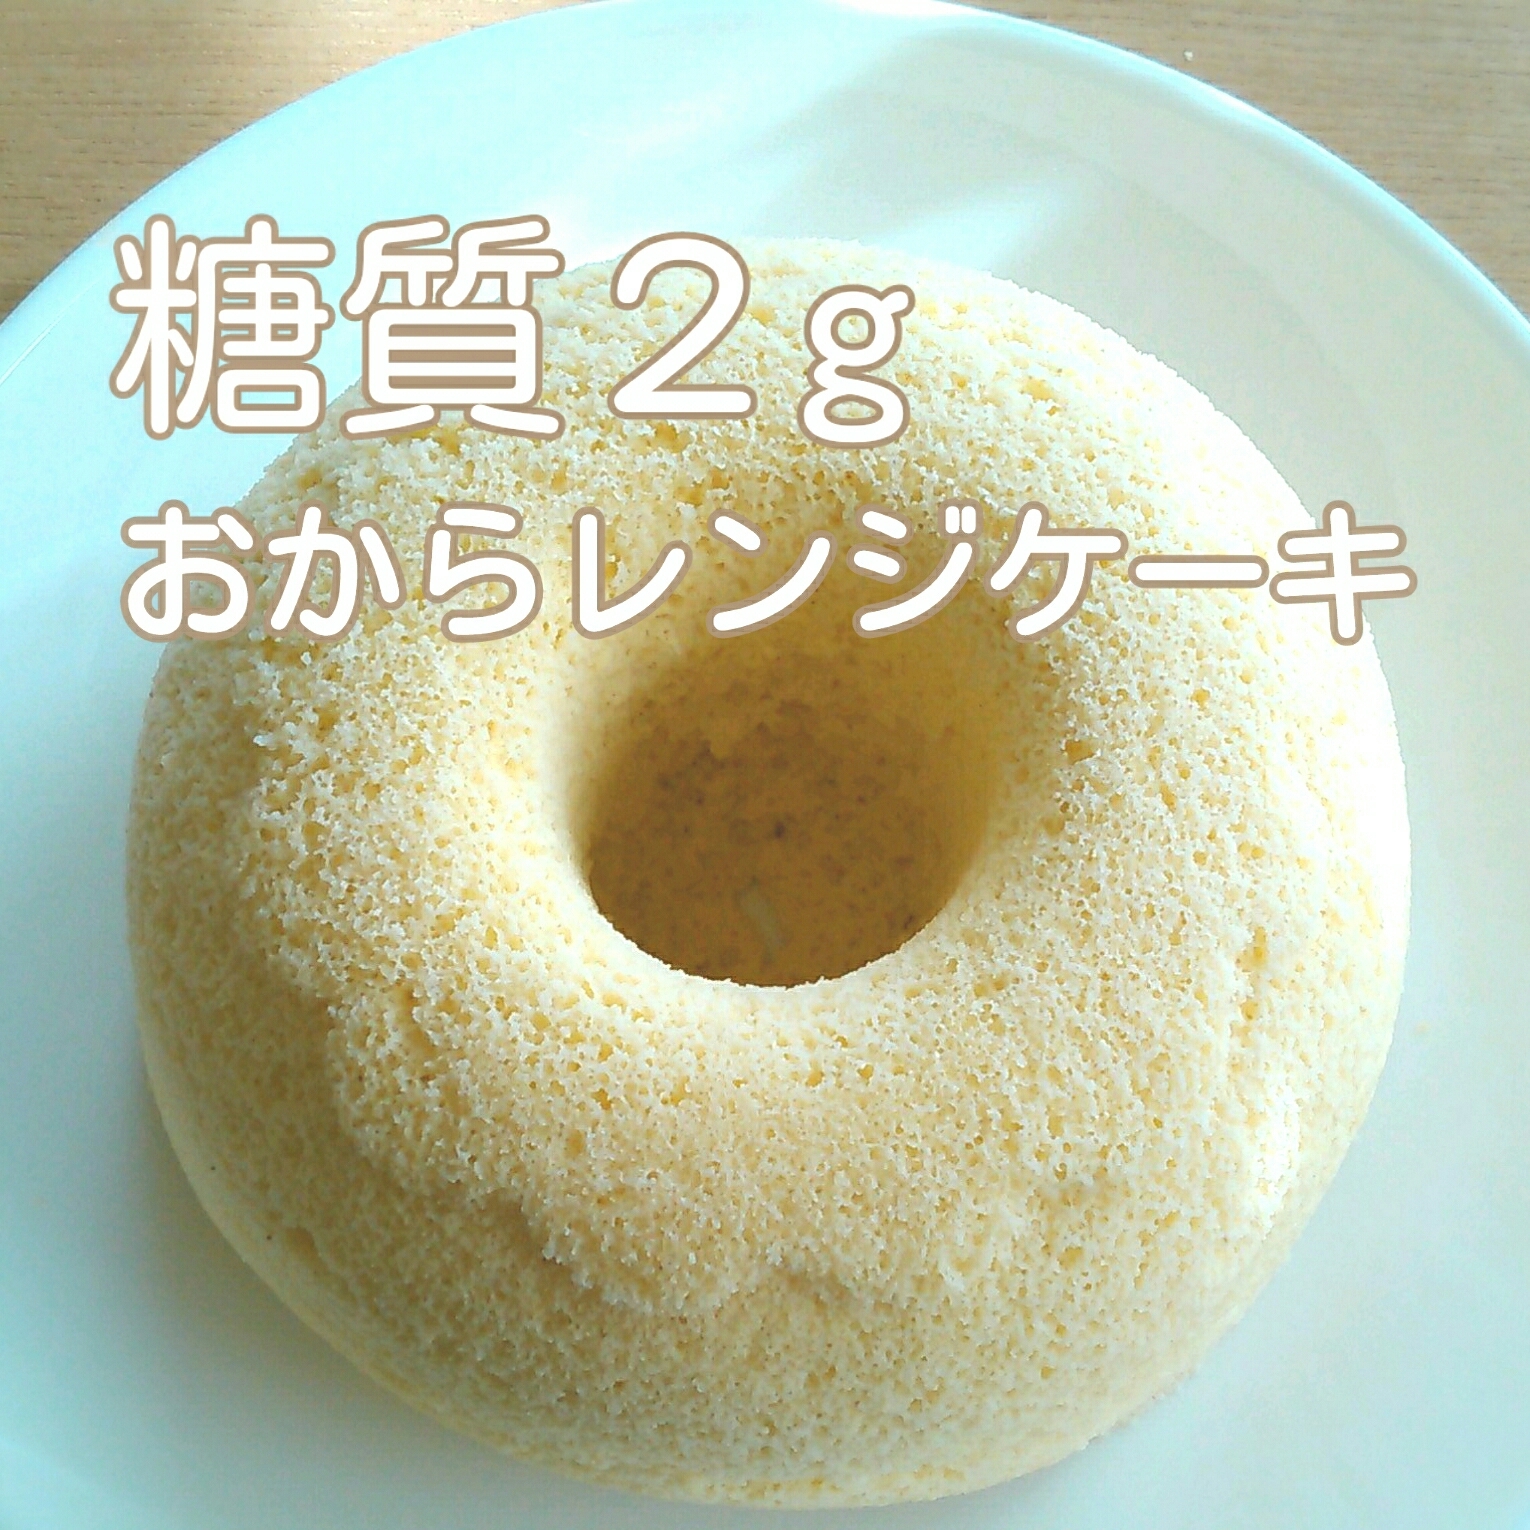 糖質制限 小麦粉不使用 糖質2gおからレンジケーキ レシピ 作り方 By Maru San 楽天レシピ